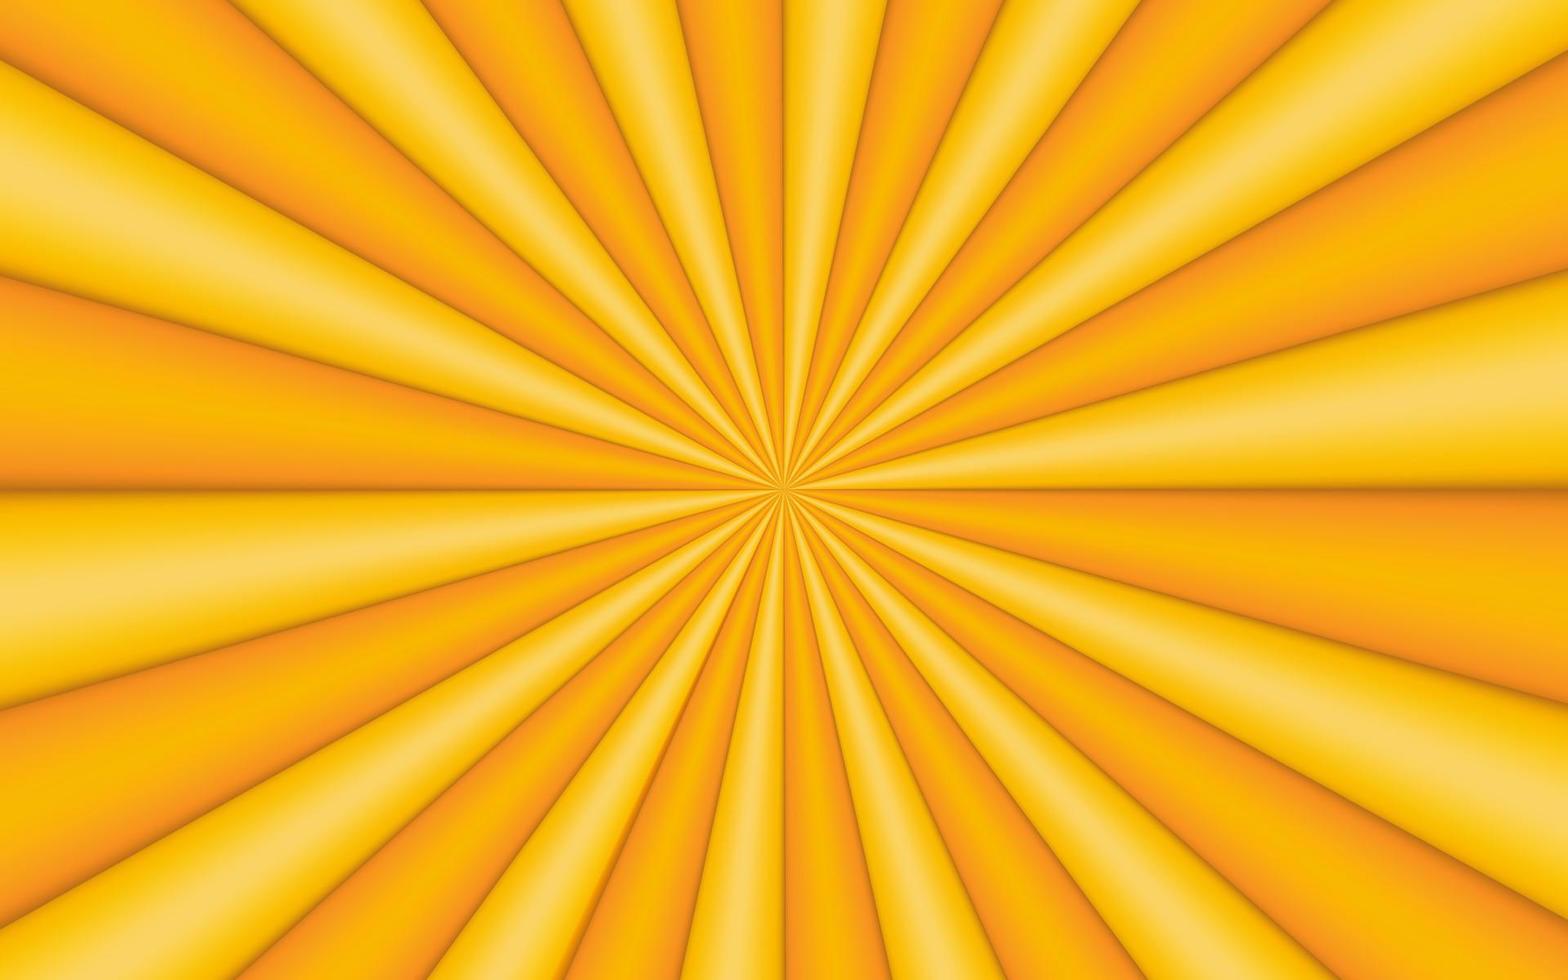 Sonnenstrahlen Retro-Vintage-Stil auf gelbem Hintergrund, Comic-Muster mit Sunburst 3D-Hintergrund. Strahlen. Sommer-Banner-Vektor-Illustration vektor